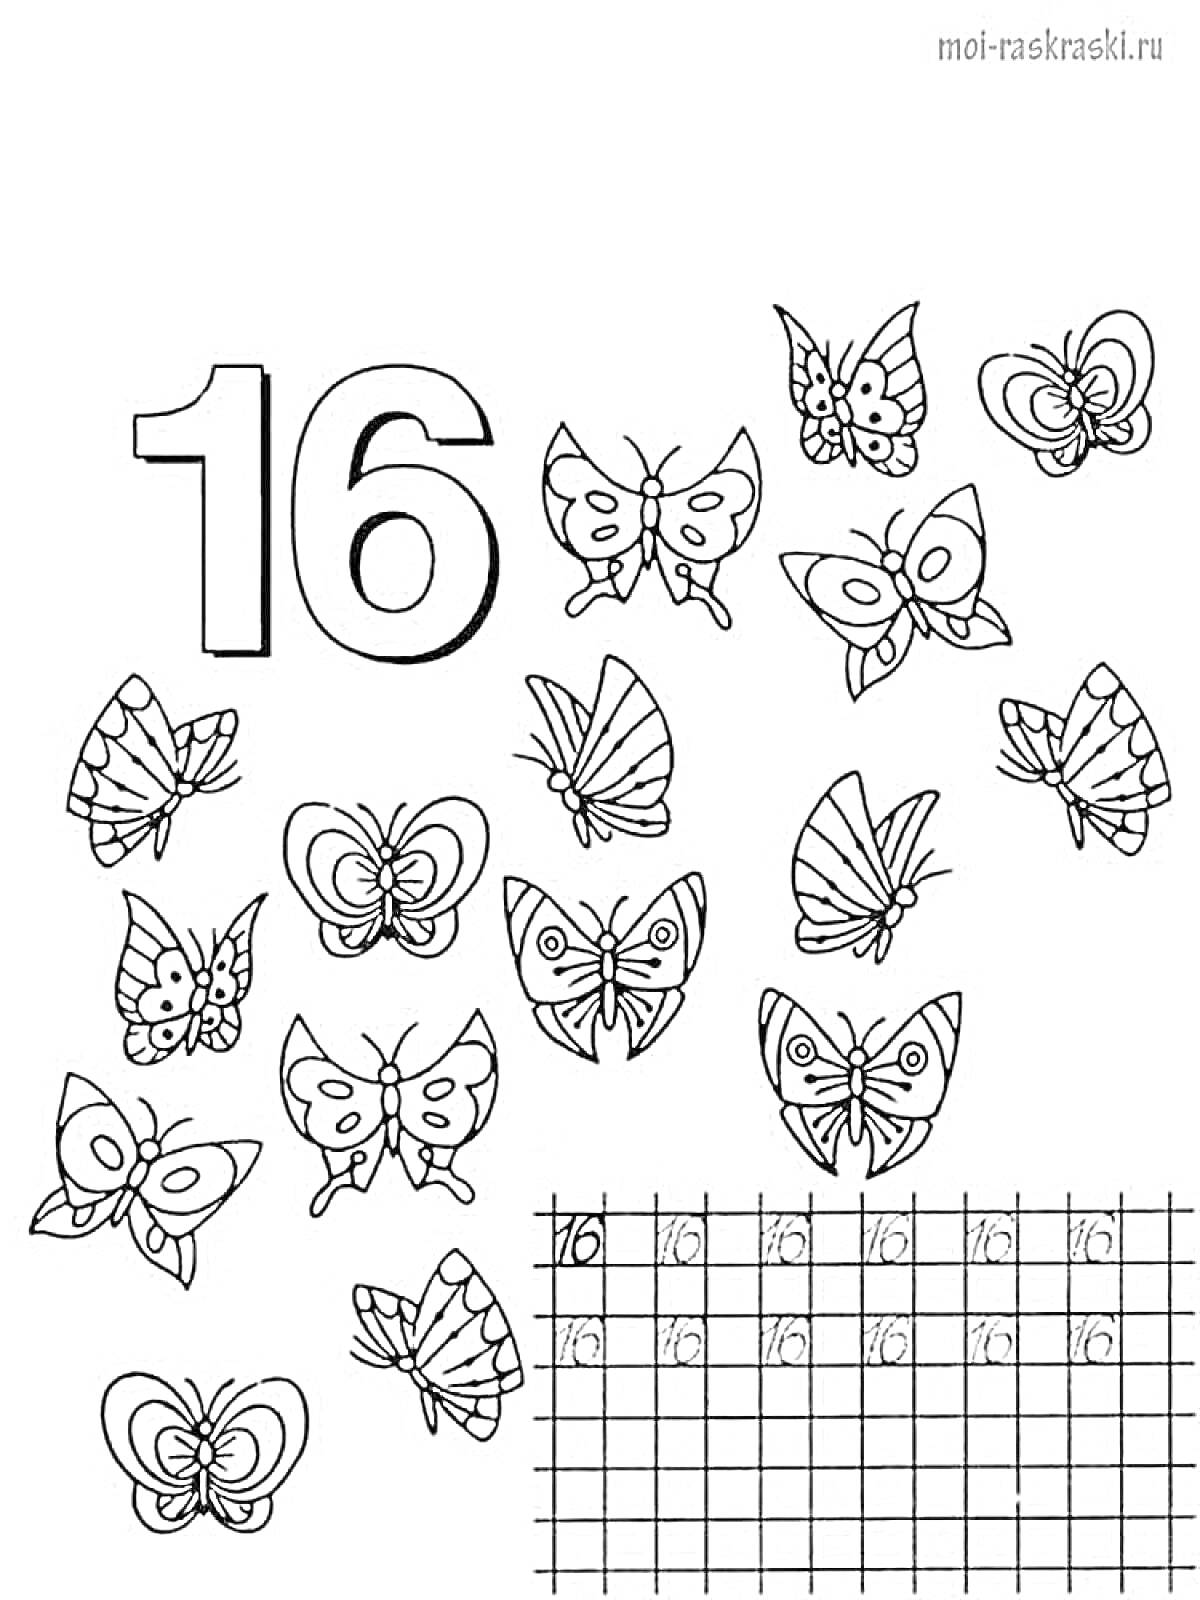 Раскраска Раскраска с числом 16 и бабочками